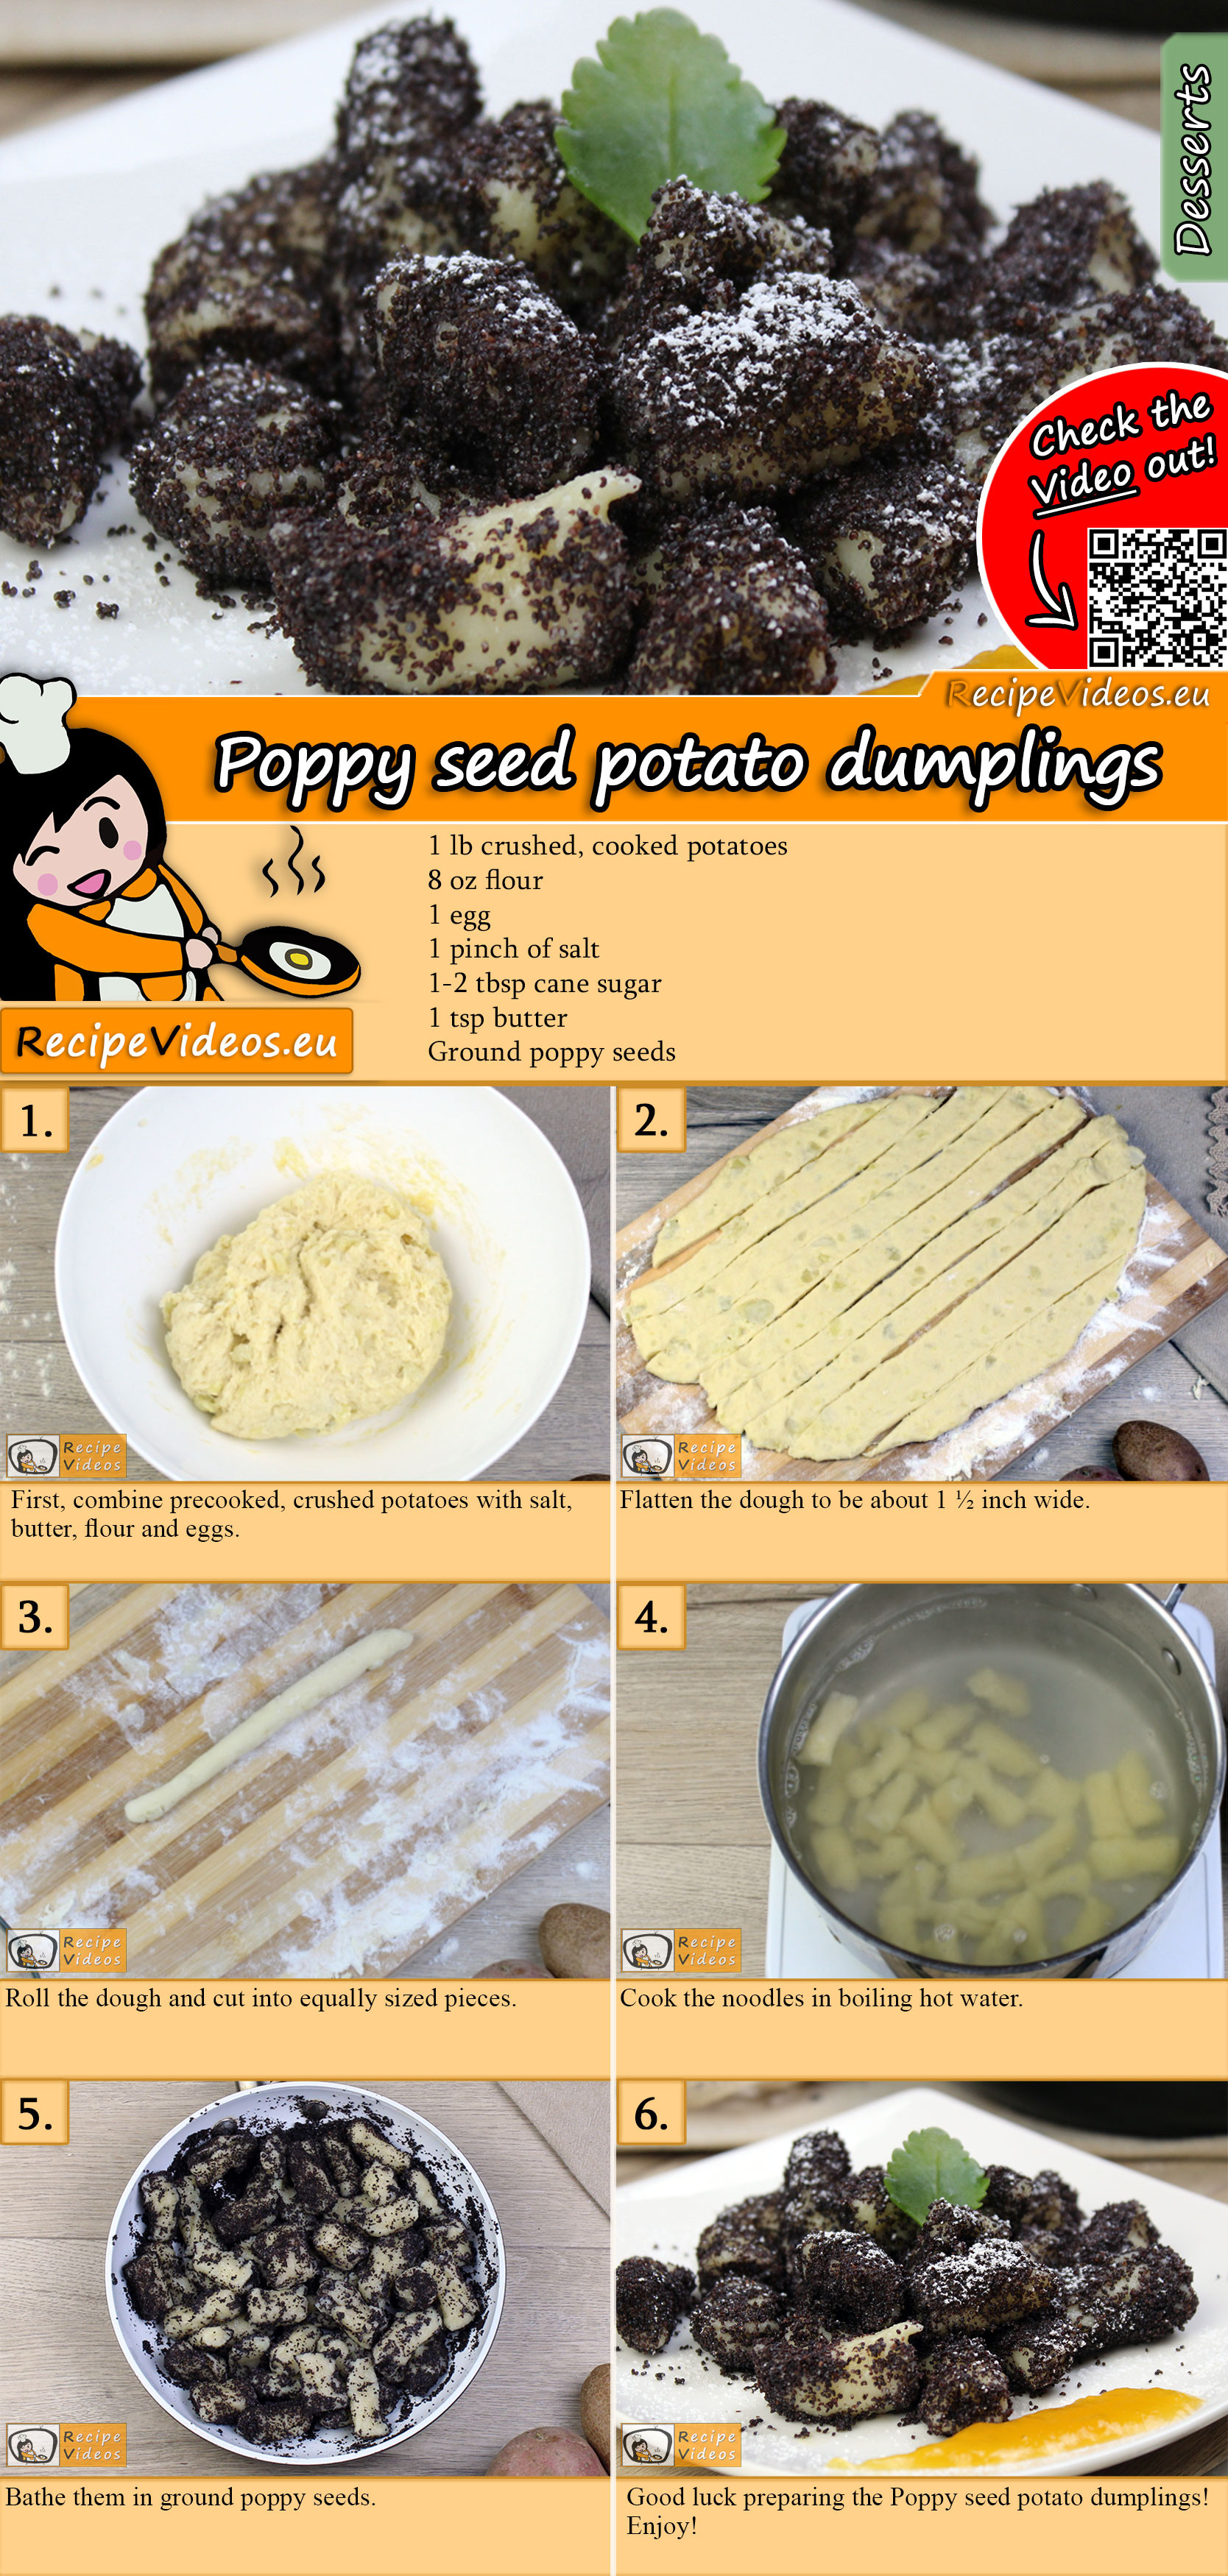 Poppy seed potato dumplings recipe with video